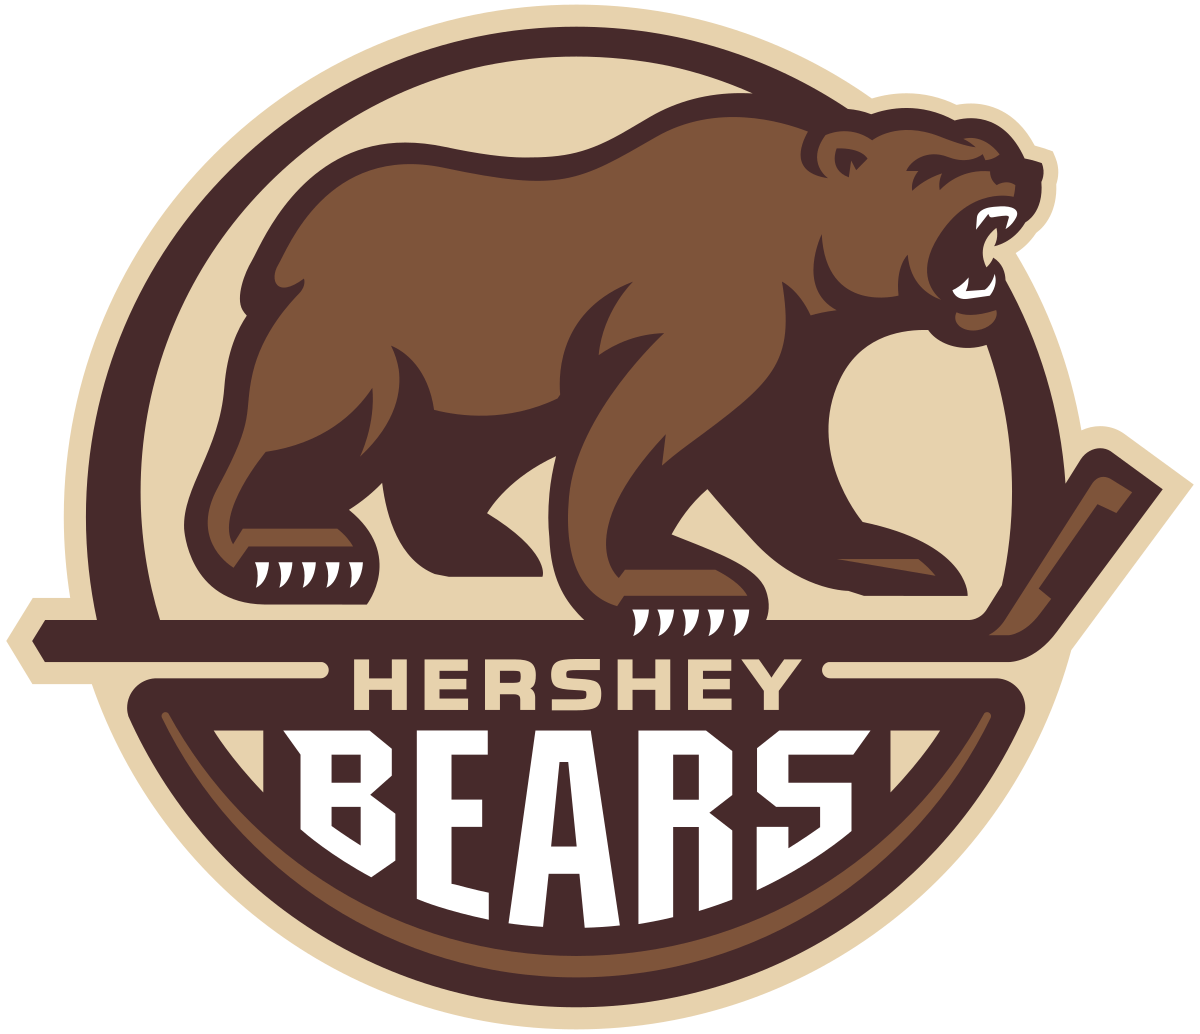 Hershey Bears New Logo - Hershey Bears